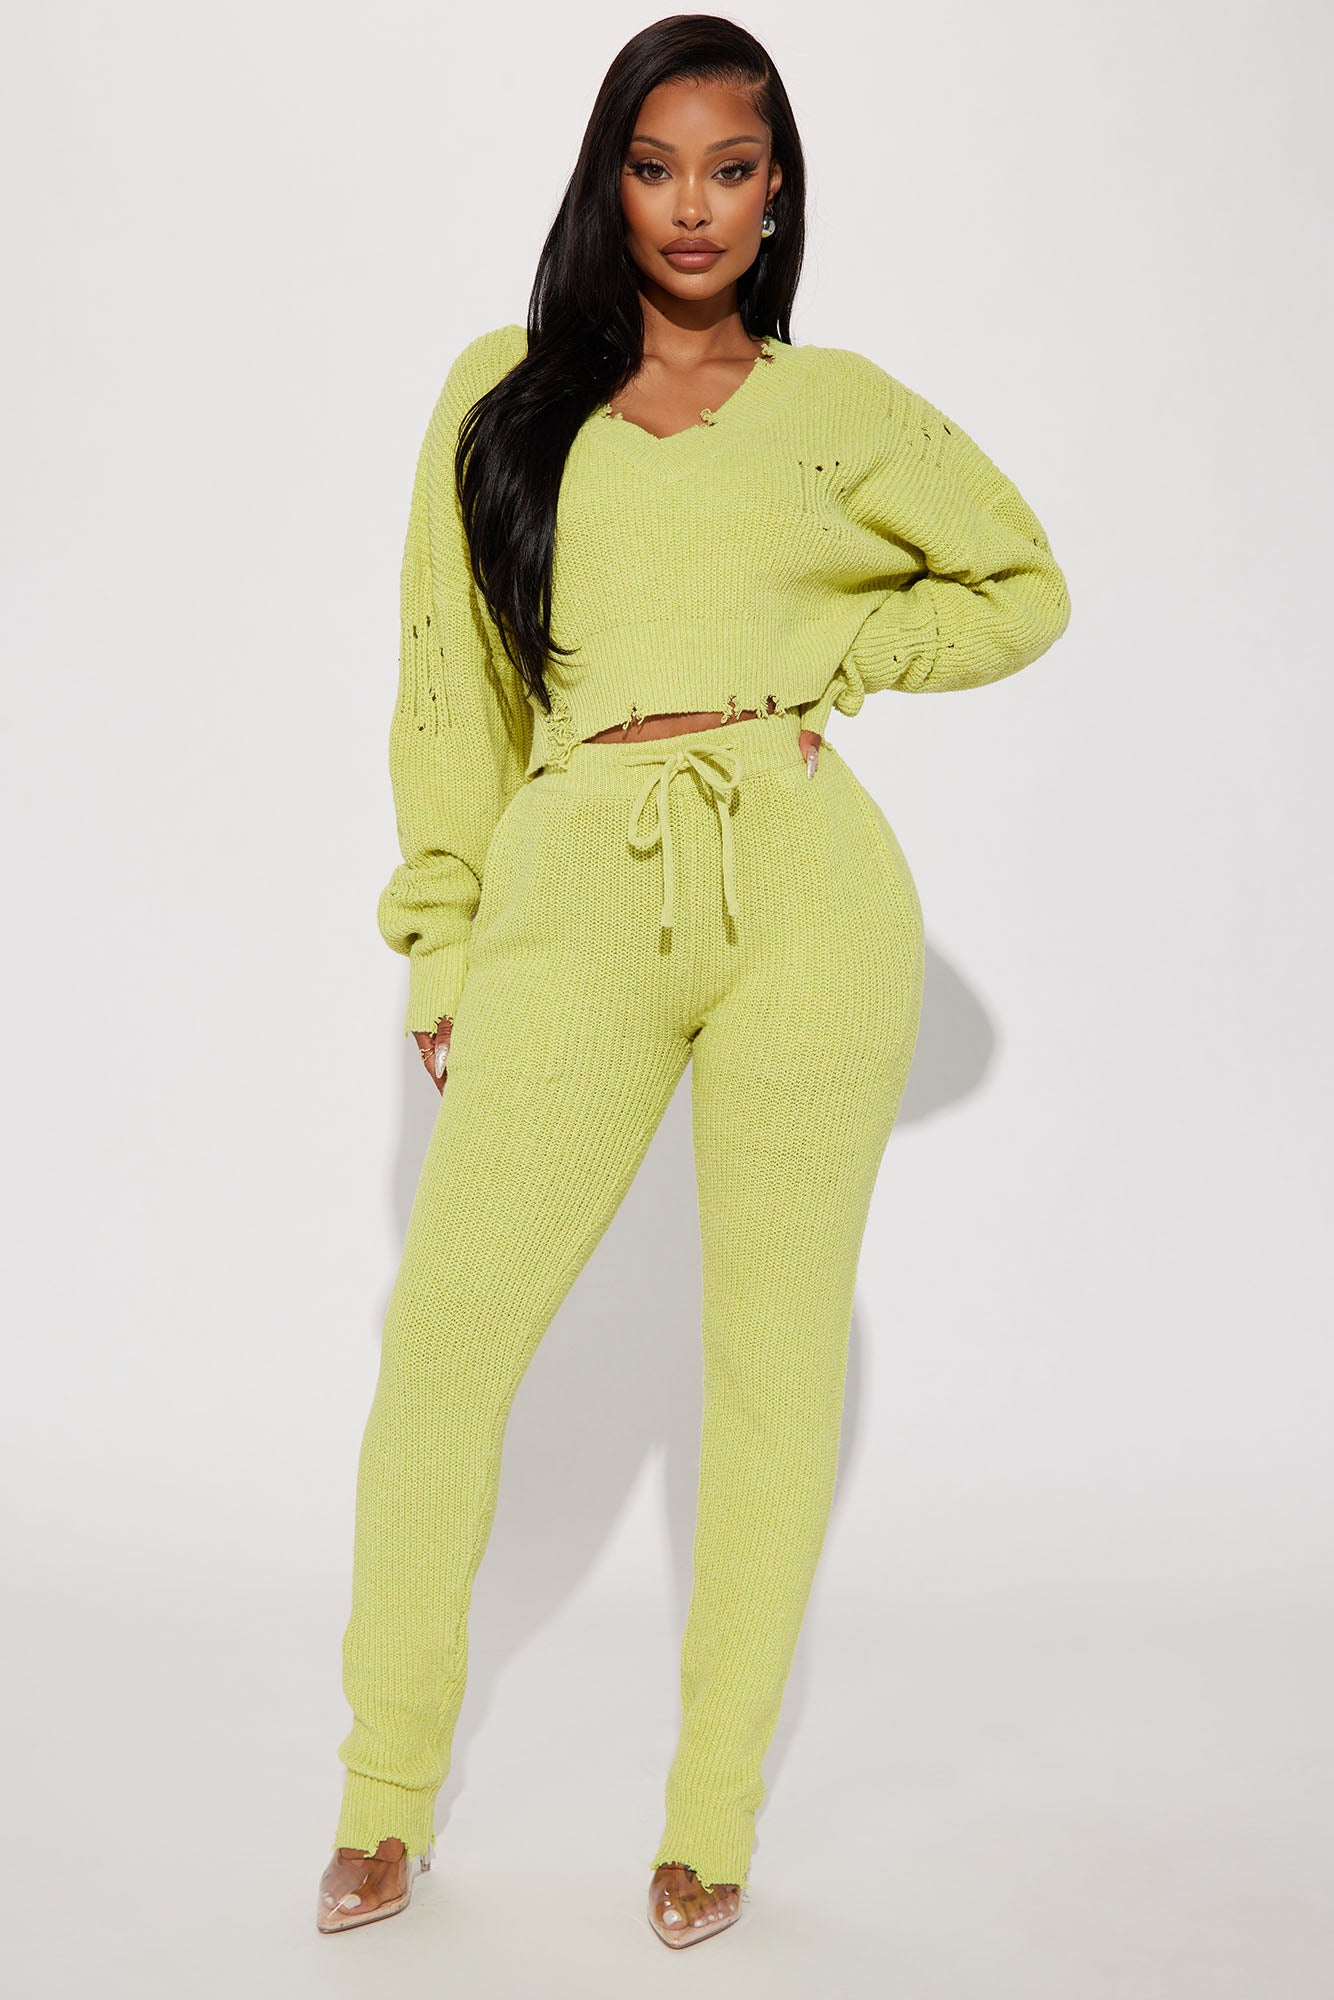 Being Myself Sweater Pant Set - Chartreuse, Fashion Nova, Matching Sets